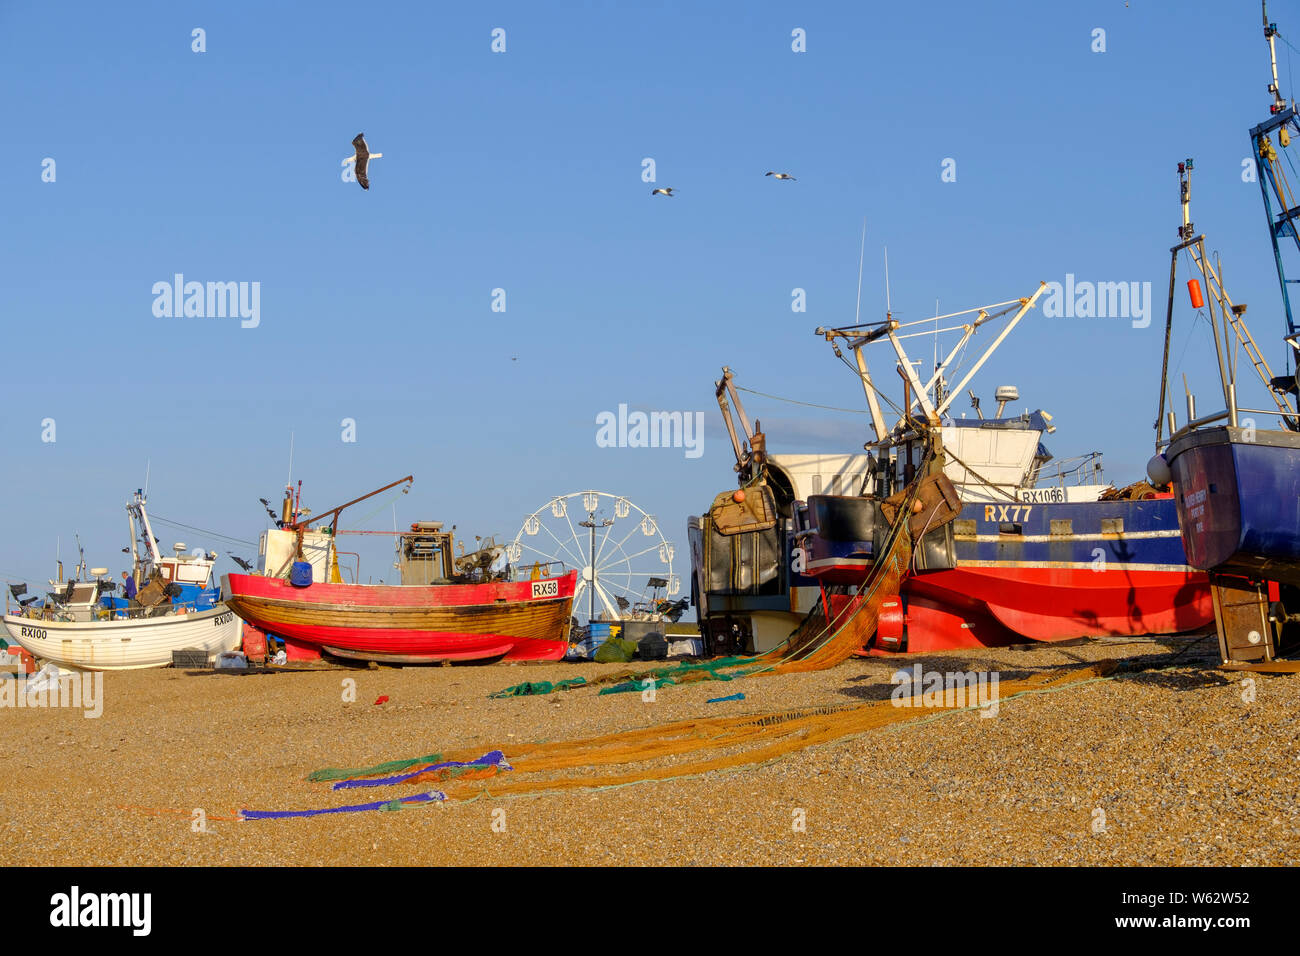 Les bateaux de pêche colorés Hastings sur le stade de la vieille ville, plage des pêcheurs, East Sussex, UK Banque D'Images